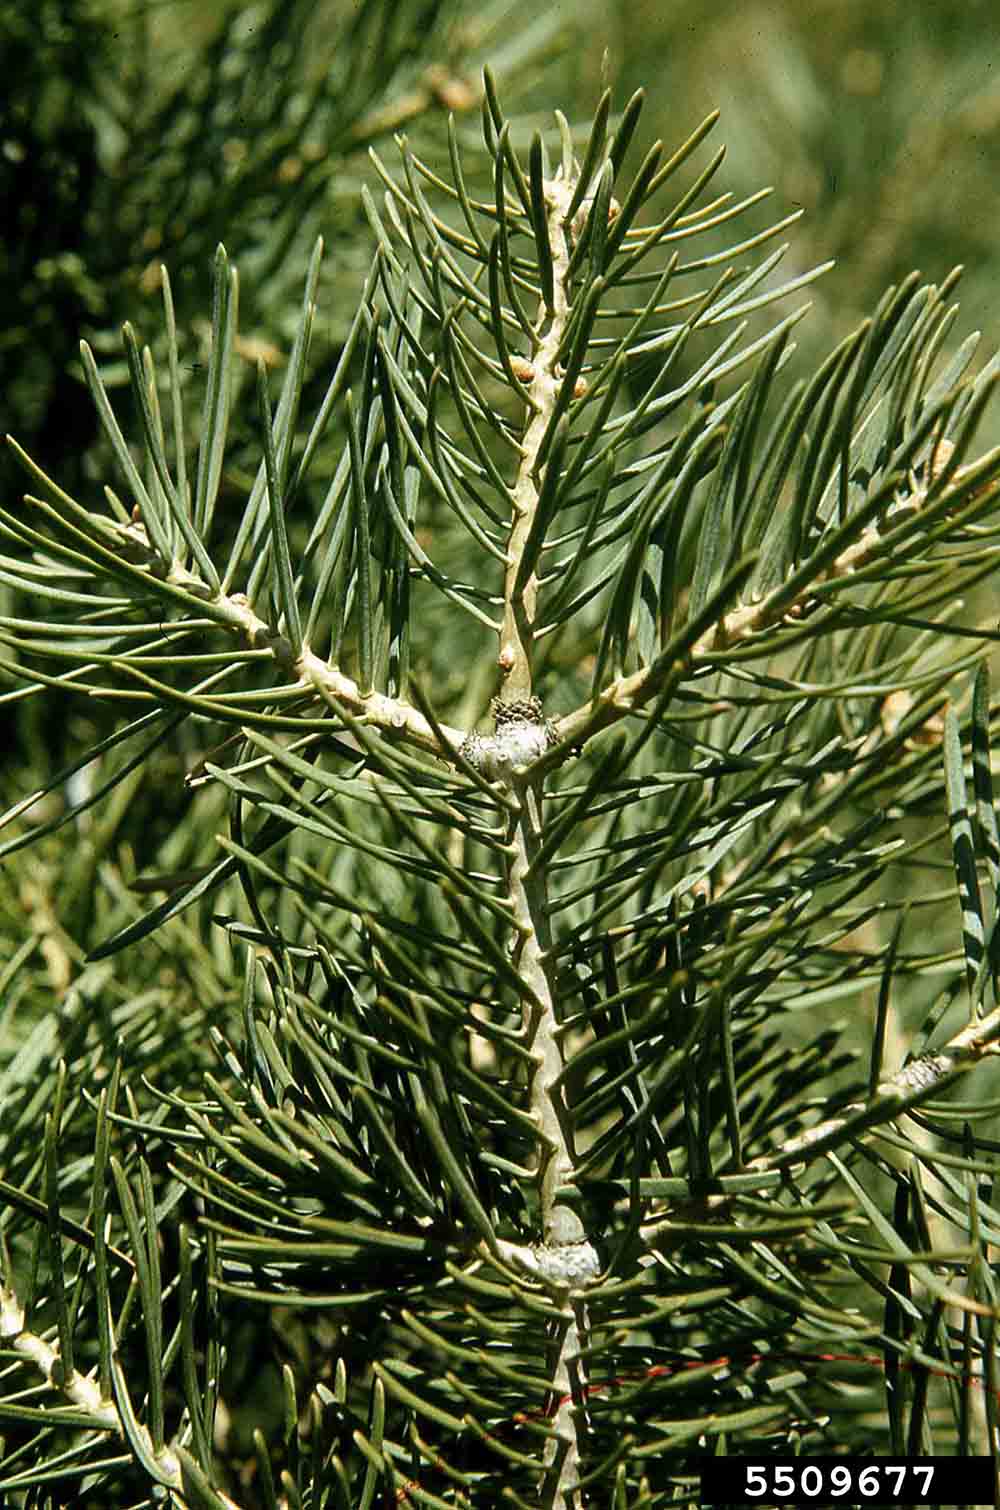 White fir twig